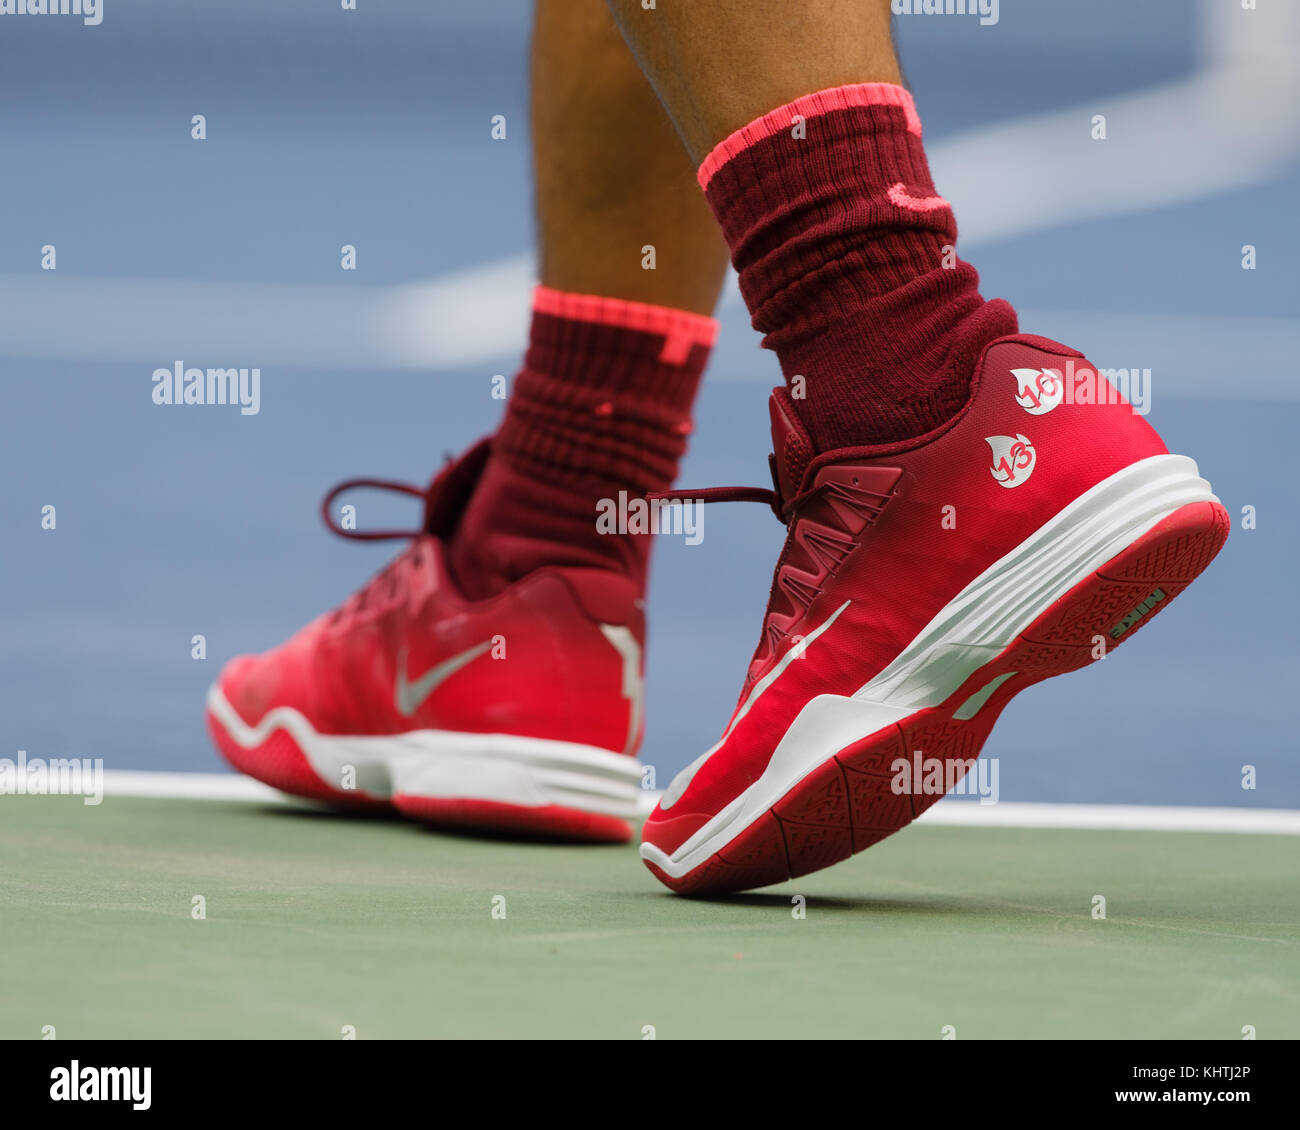 Primer plano del tenista español Rafael Nadal calzado deportivo durante su men's singles match en el US Open 2017 Campeonato de tenis, New York City, Fotografía de stock - Alamy